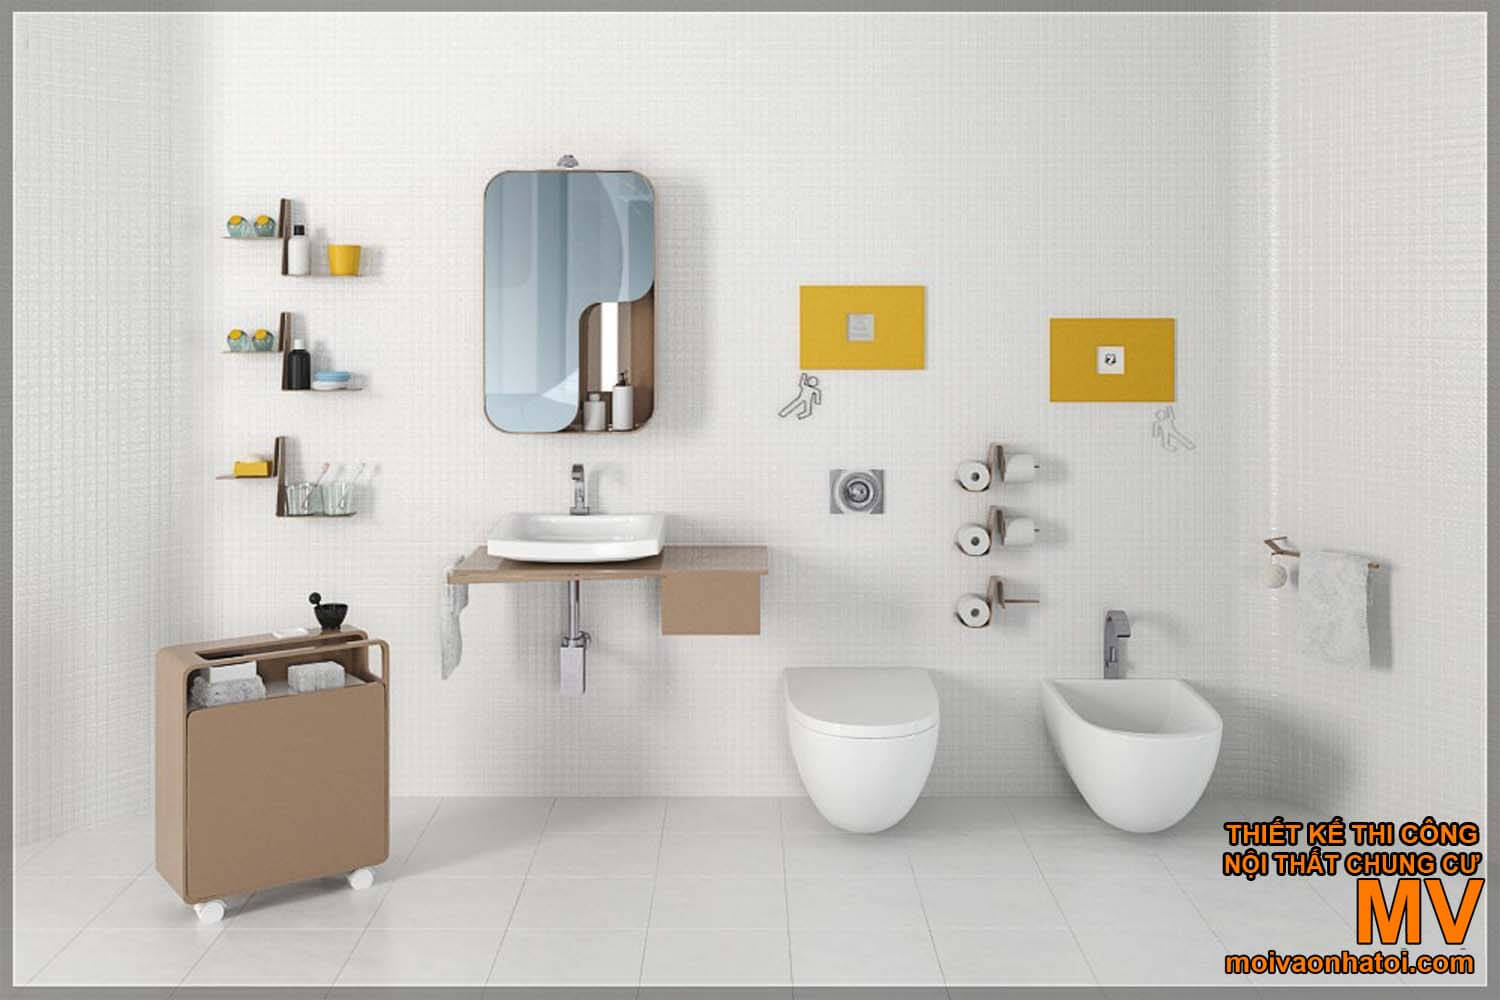 lavabo wash face, bellissimo design del bagno moderno